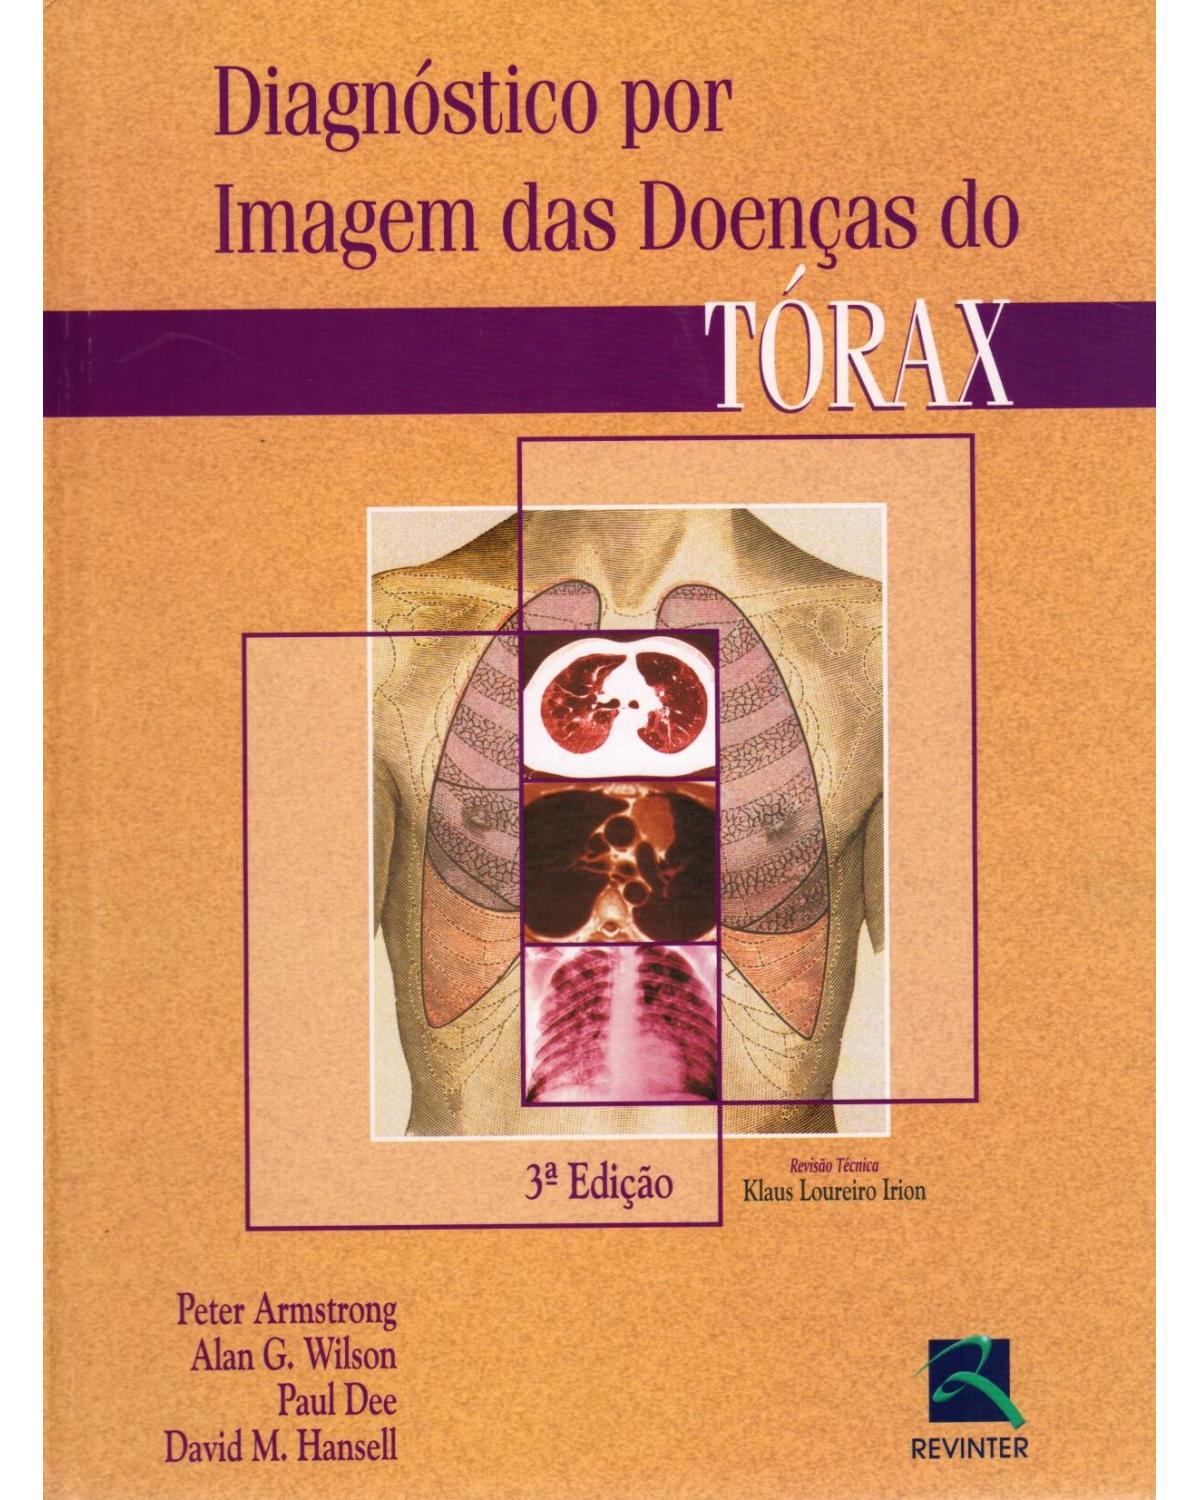 Diagnóstico por imagem das doenças do tórax - 3ª Edição | 2005